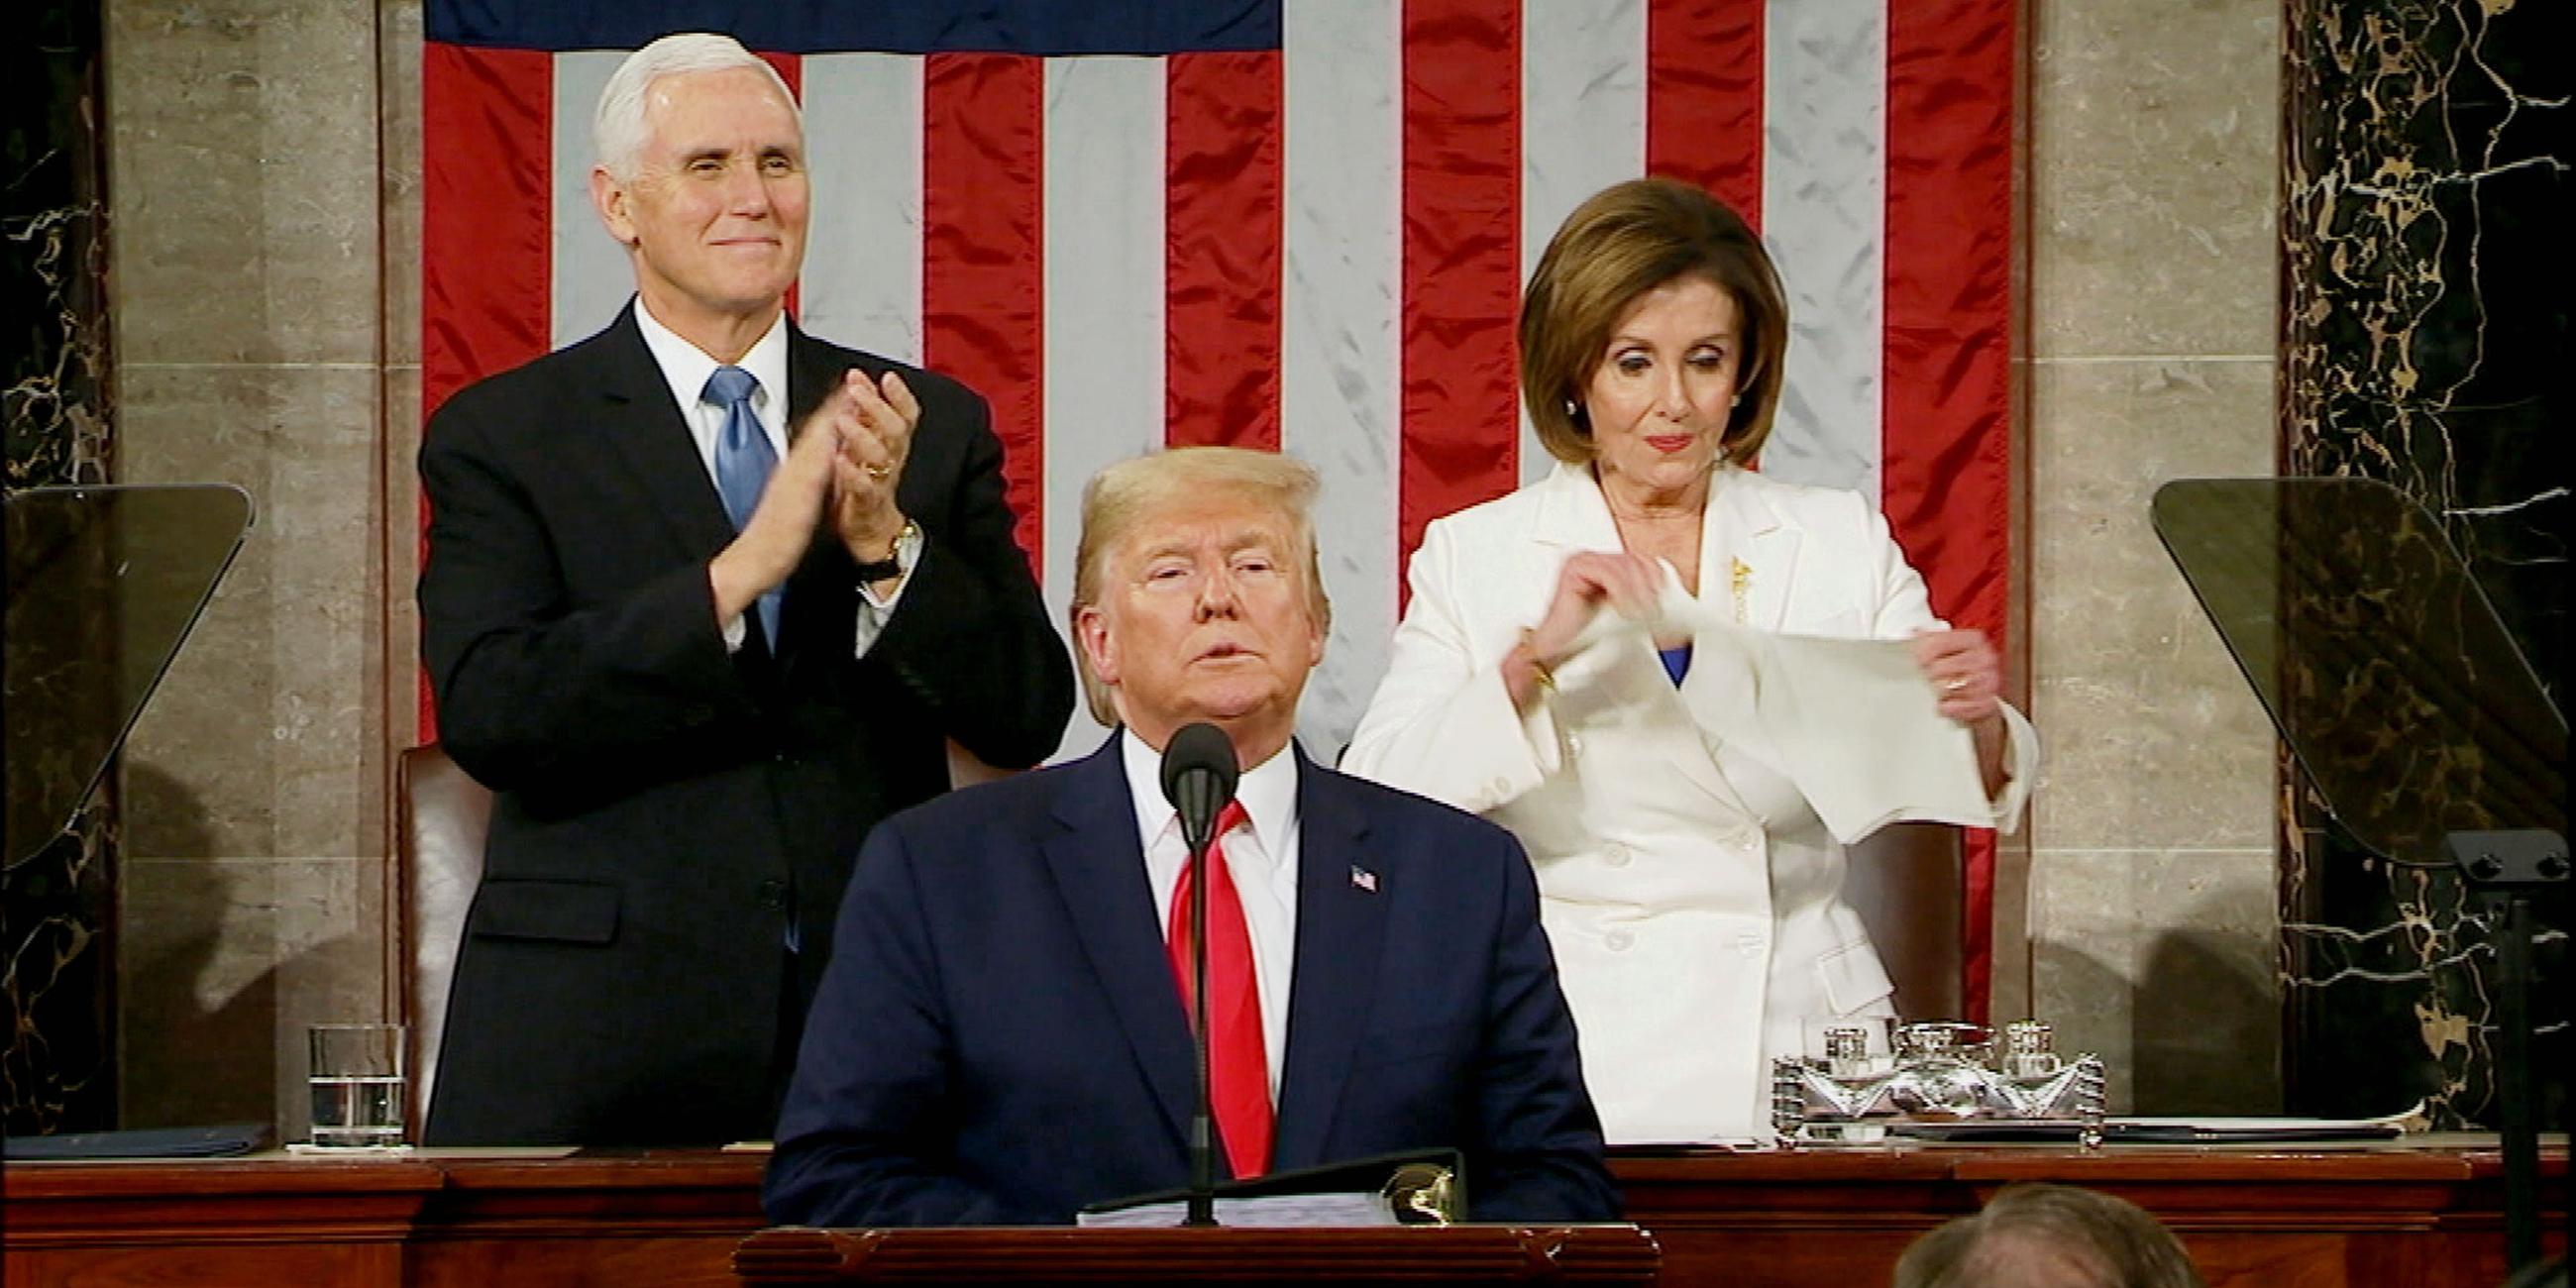 "Trumps schmutziger Deal - Der Präsident und die Ukraine-Affäre": Donald Trump steht an einem Rednerpult. Links dahinter steht Vizepräsident Mike Pence, der klatscht. Rechts neben ihm steht Nancy Pelosi, die ein Blatt zerreißt. Im Hintergrund hängt die amerikanische Flagge.